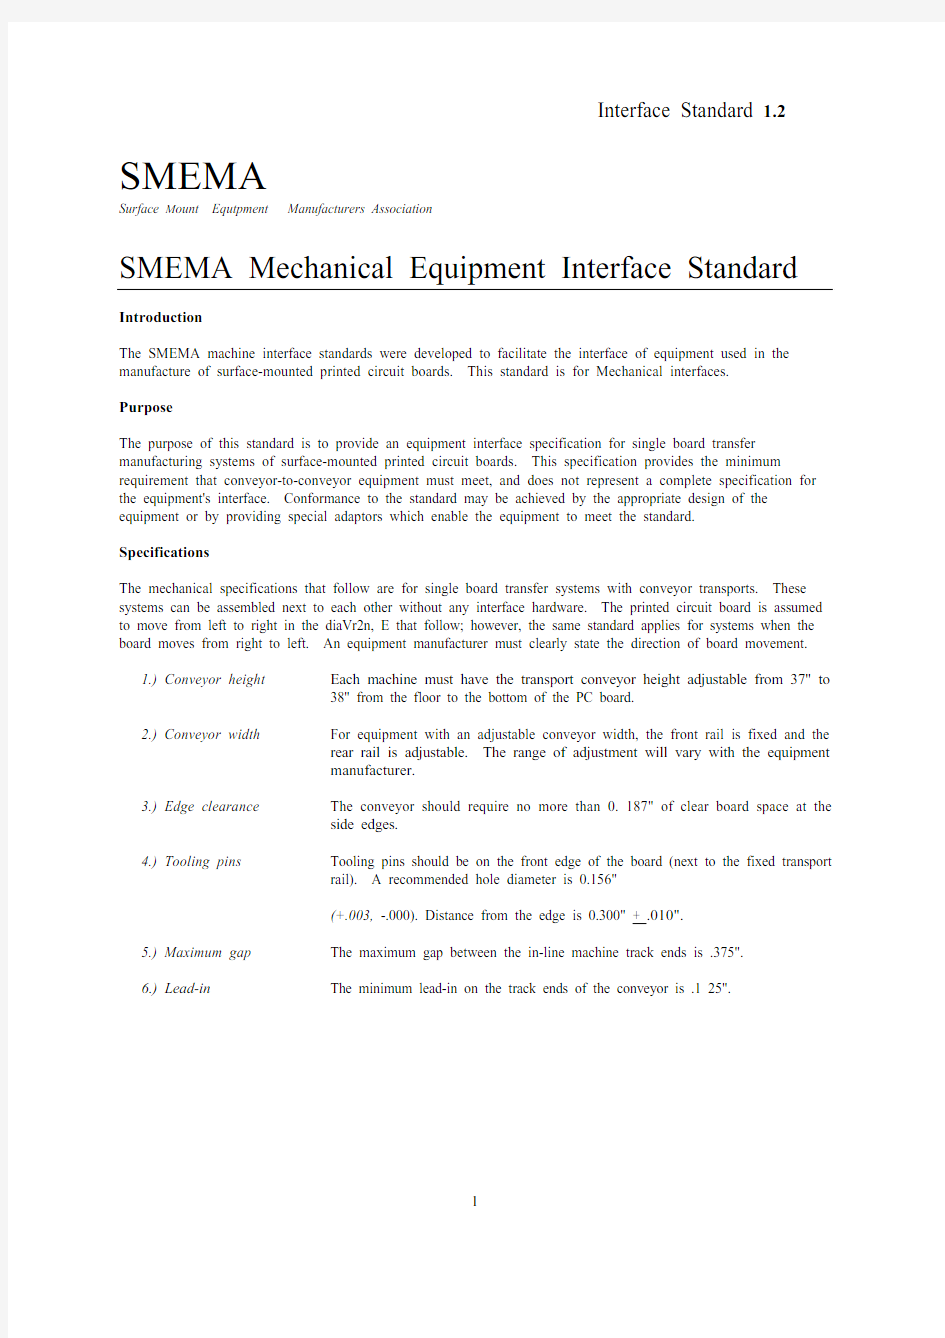 人机界面的SMEMA标准开发